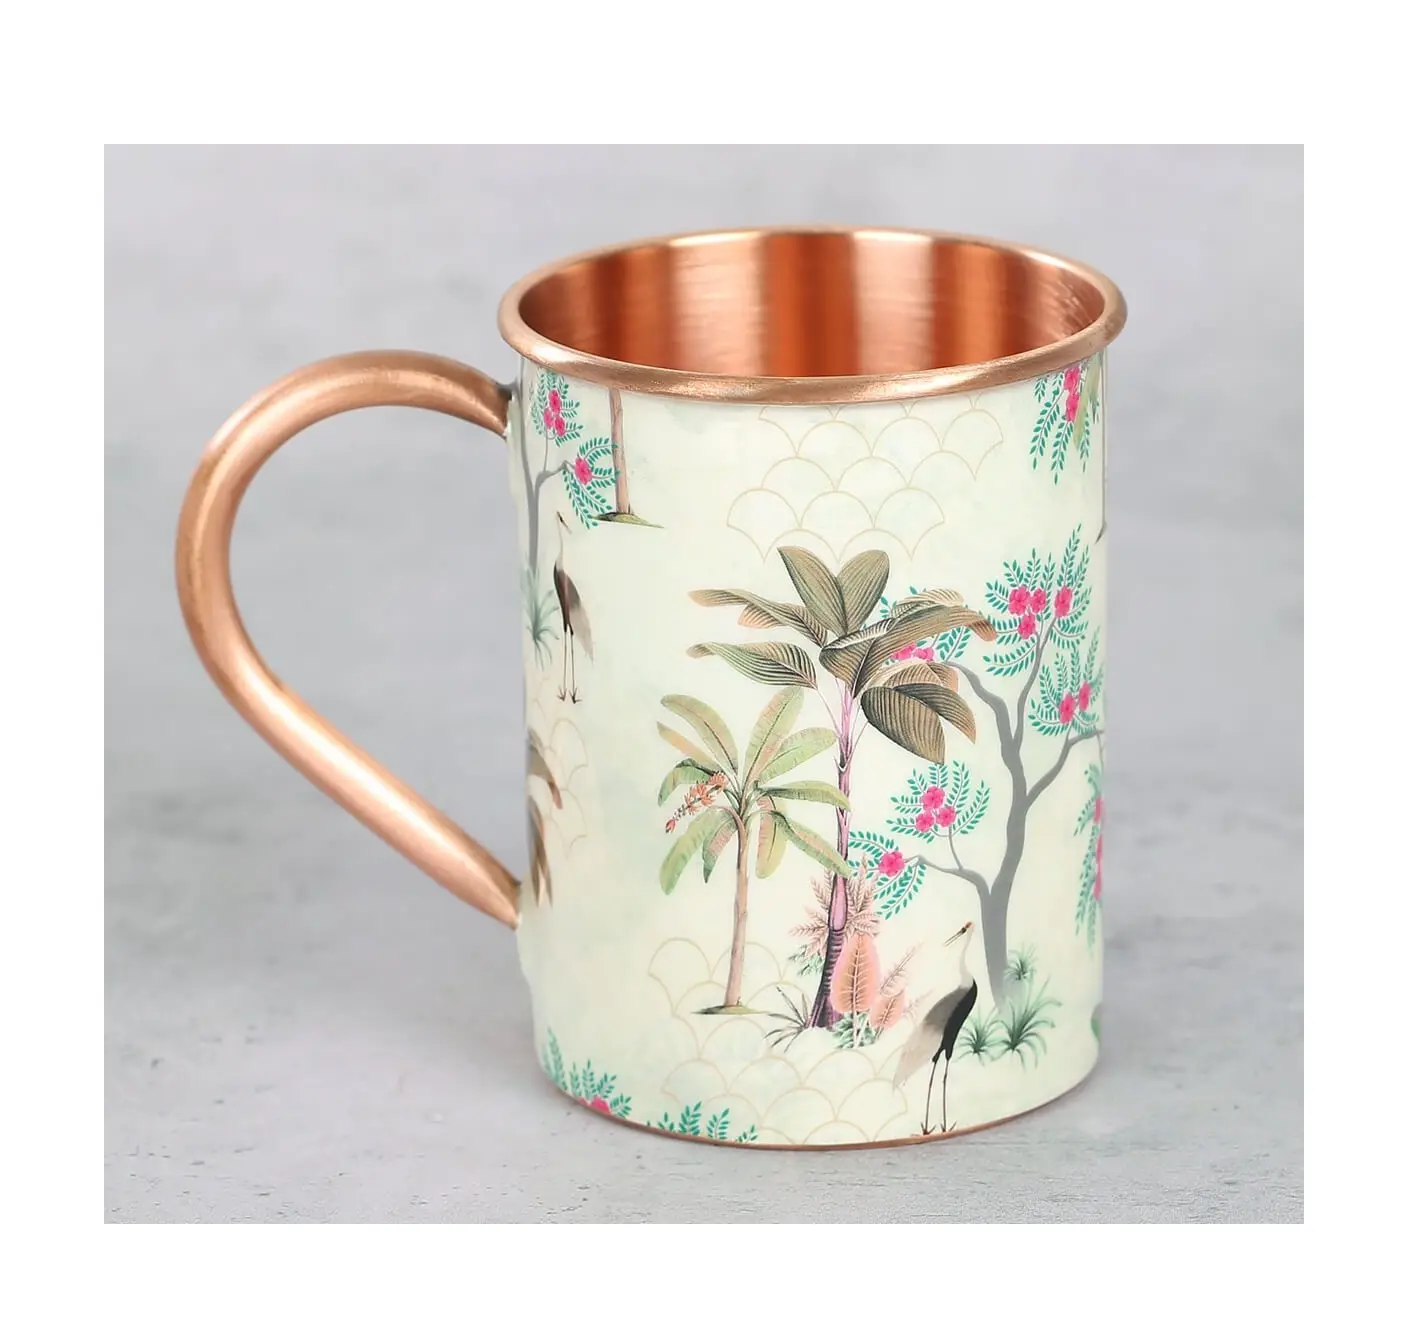 Floral Flock Copper Mug Home Küche & Tabletop Drink Ware Hammered Mule Copper Mug beste Qualität niedriger Preis für Kupfer becher Tassen